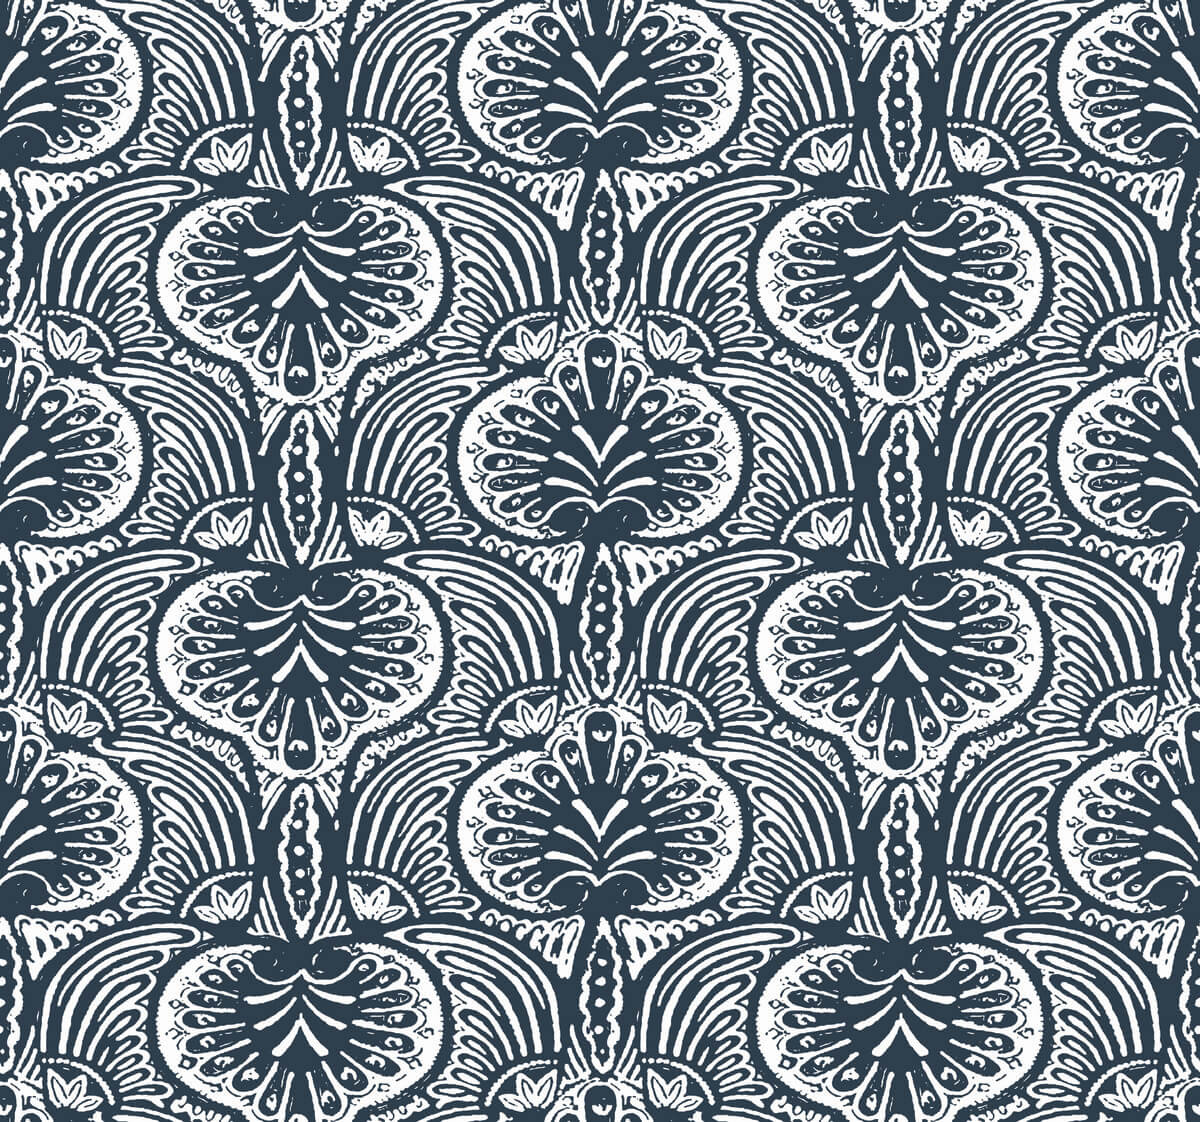 Ronald Redding Traveler Lotus Palm Wallpaper - Navy Blue